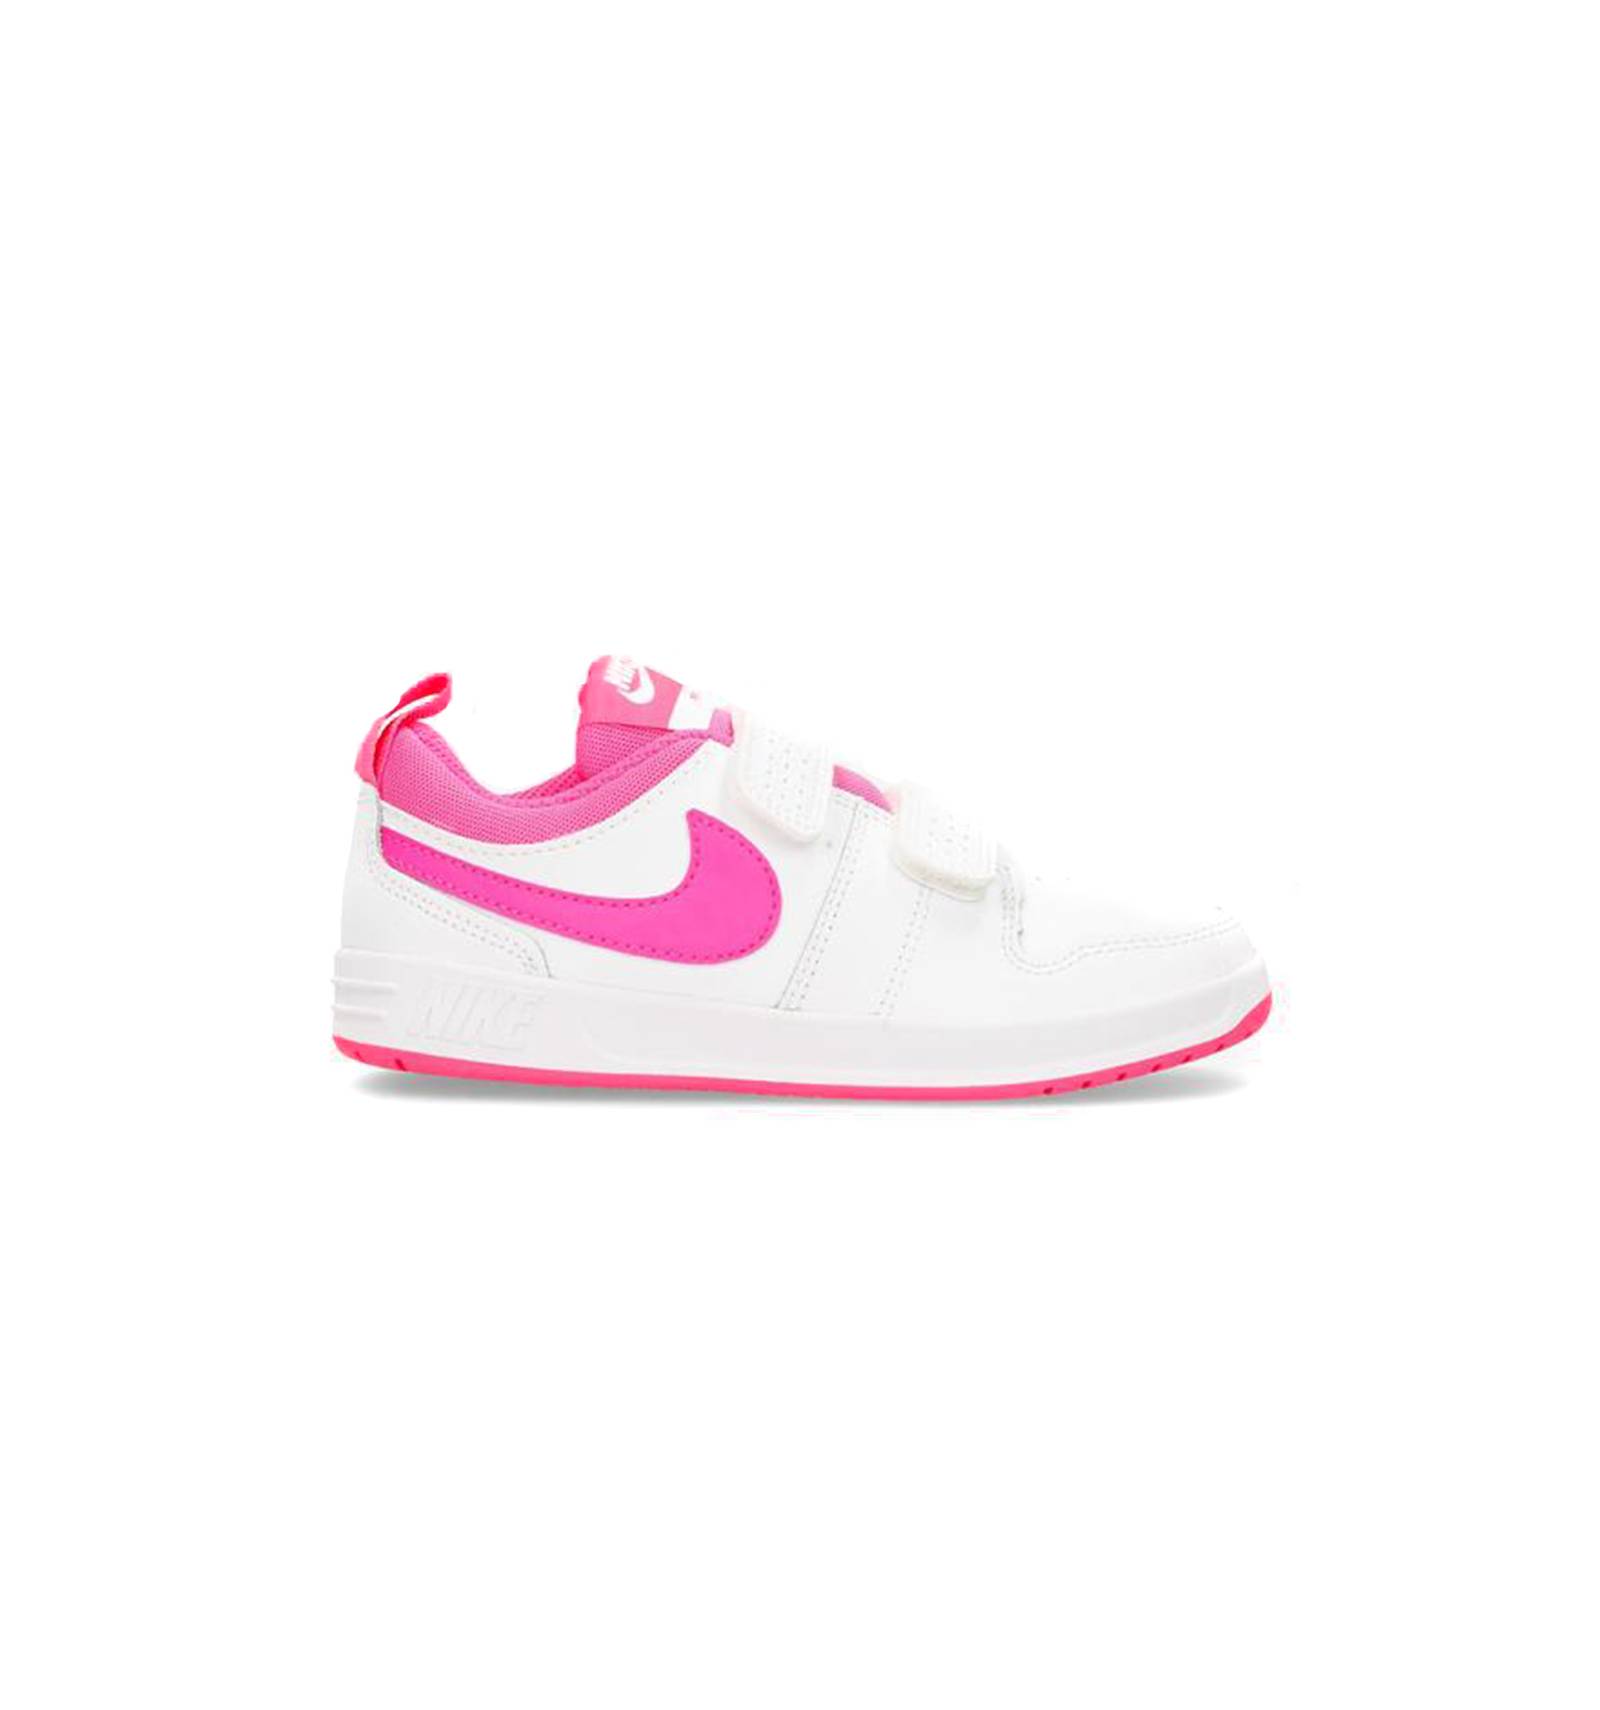 Asesorar Permanentemente Mariscos Nike - Zapatilla niña en rosa doble velcro pico 5